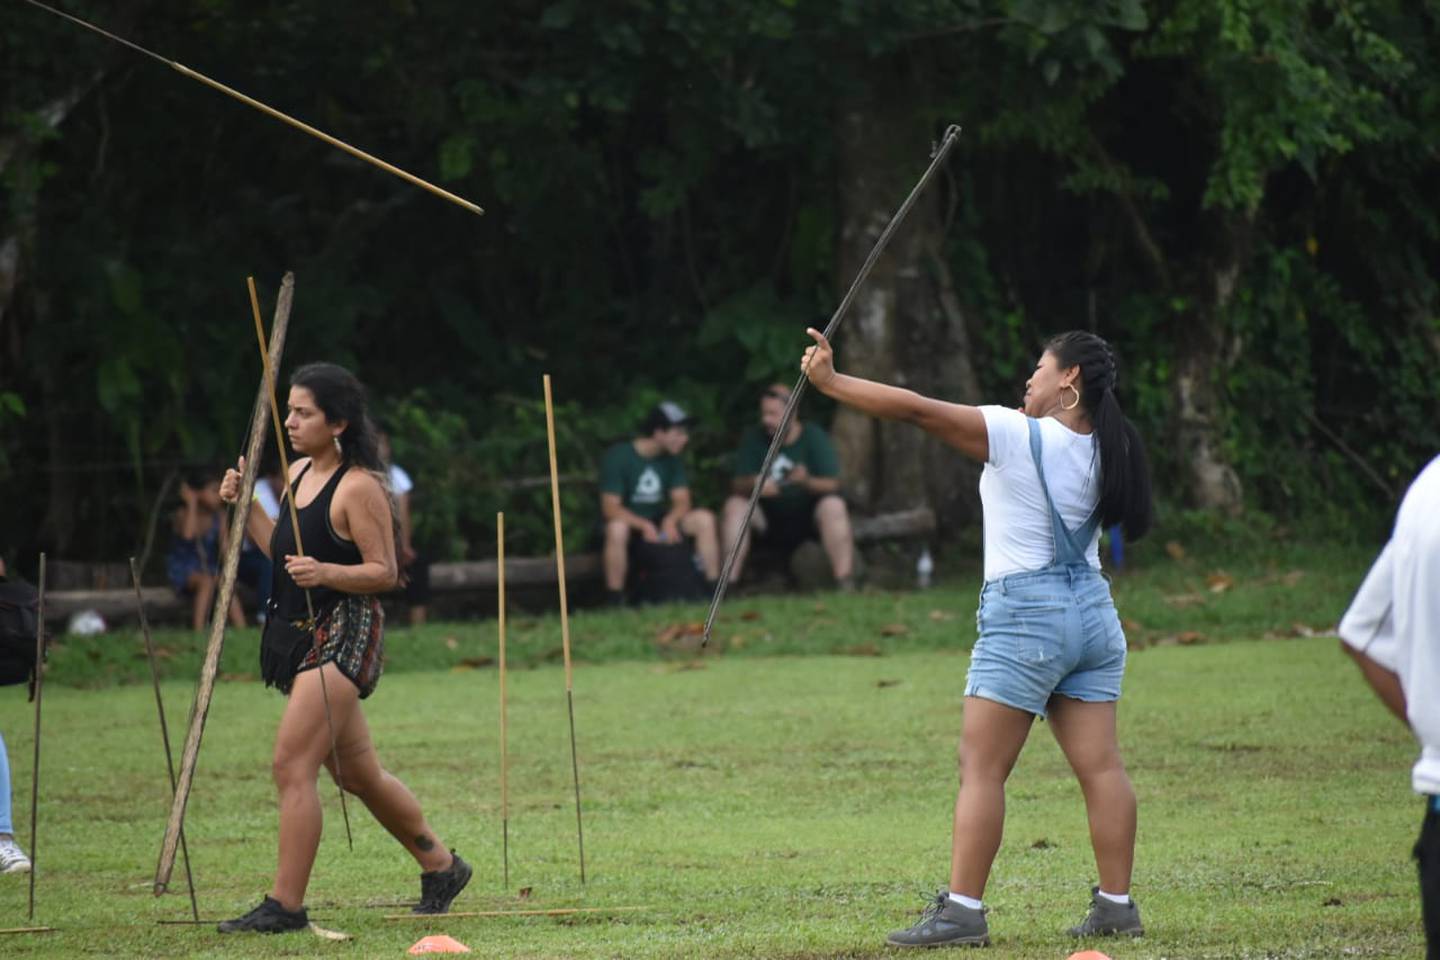 El lanzamiento de jabalina, una prueba de atletismo, es uno de los deportes por reforzar entre las poblaciones indígenas. Foto: Cortesía del Icoder.